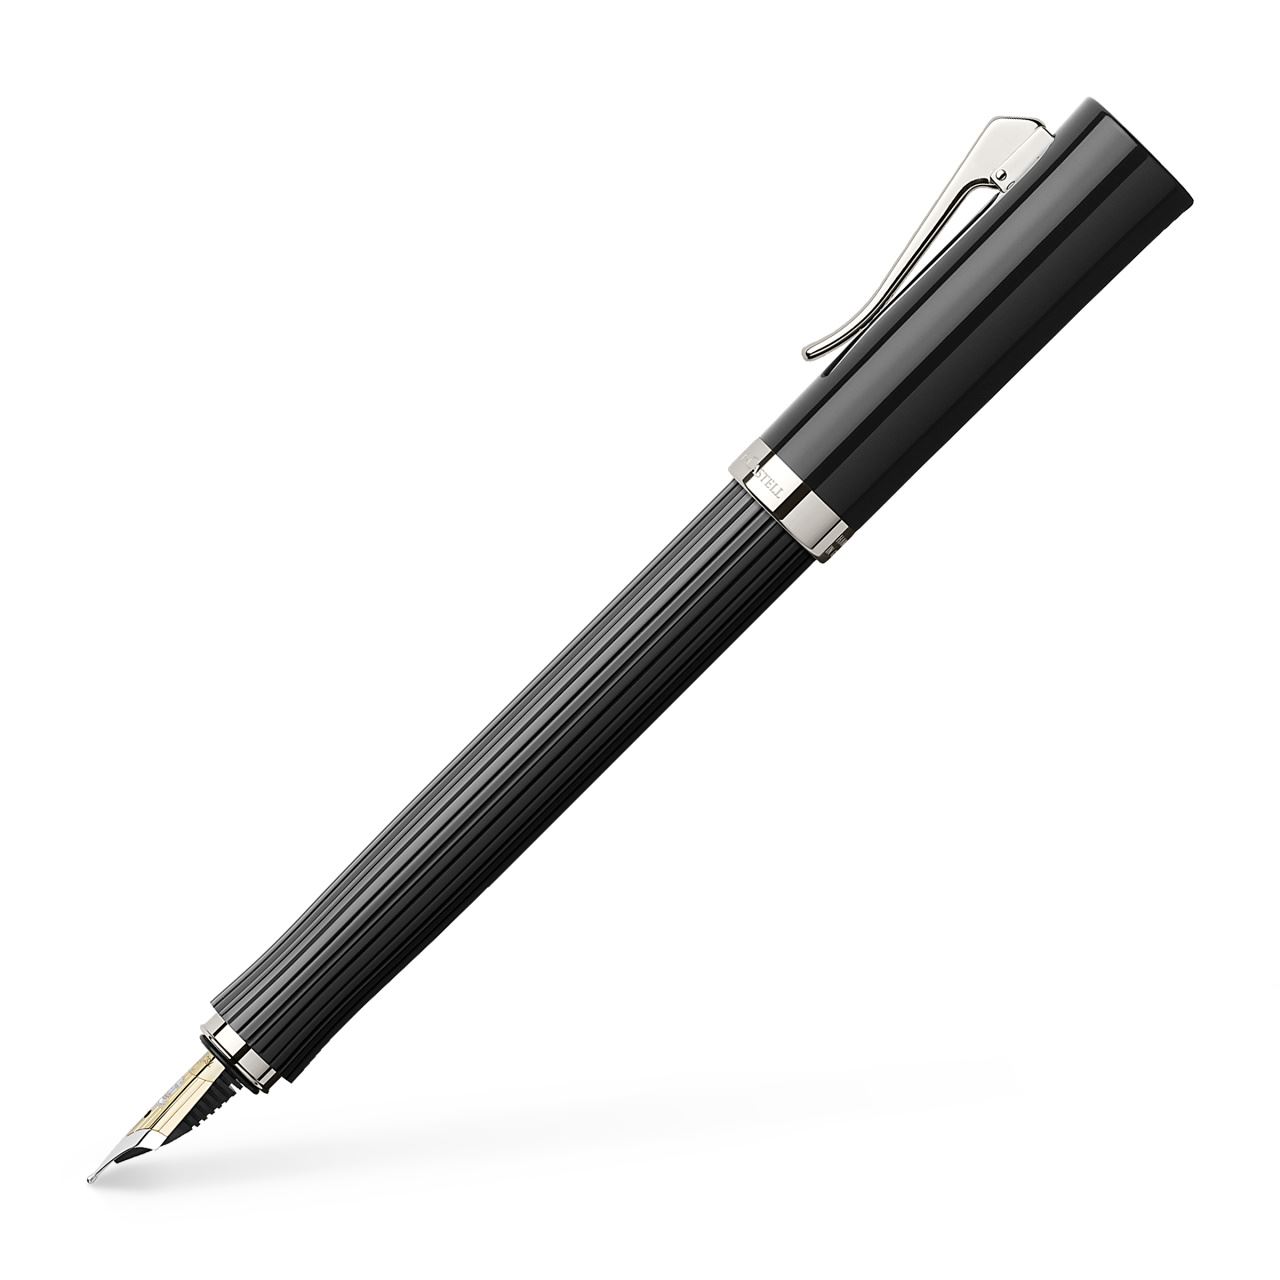 Graf-von-Faber-Castell - Fountain pen Intuition fluted, black, Medium